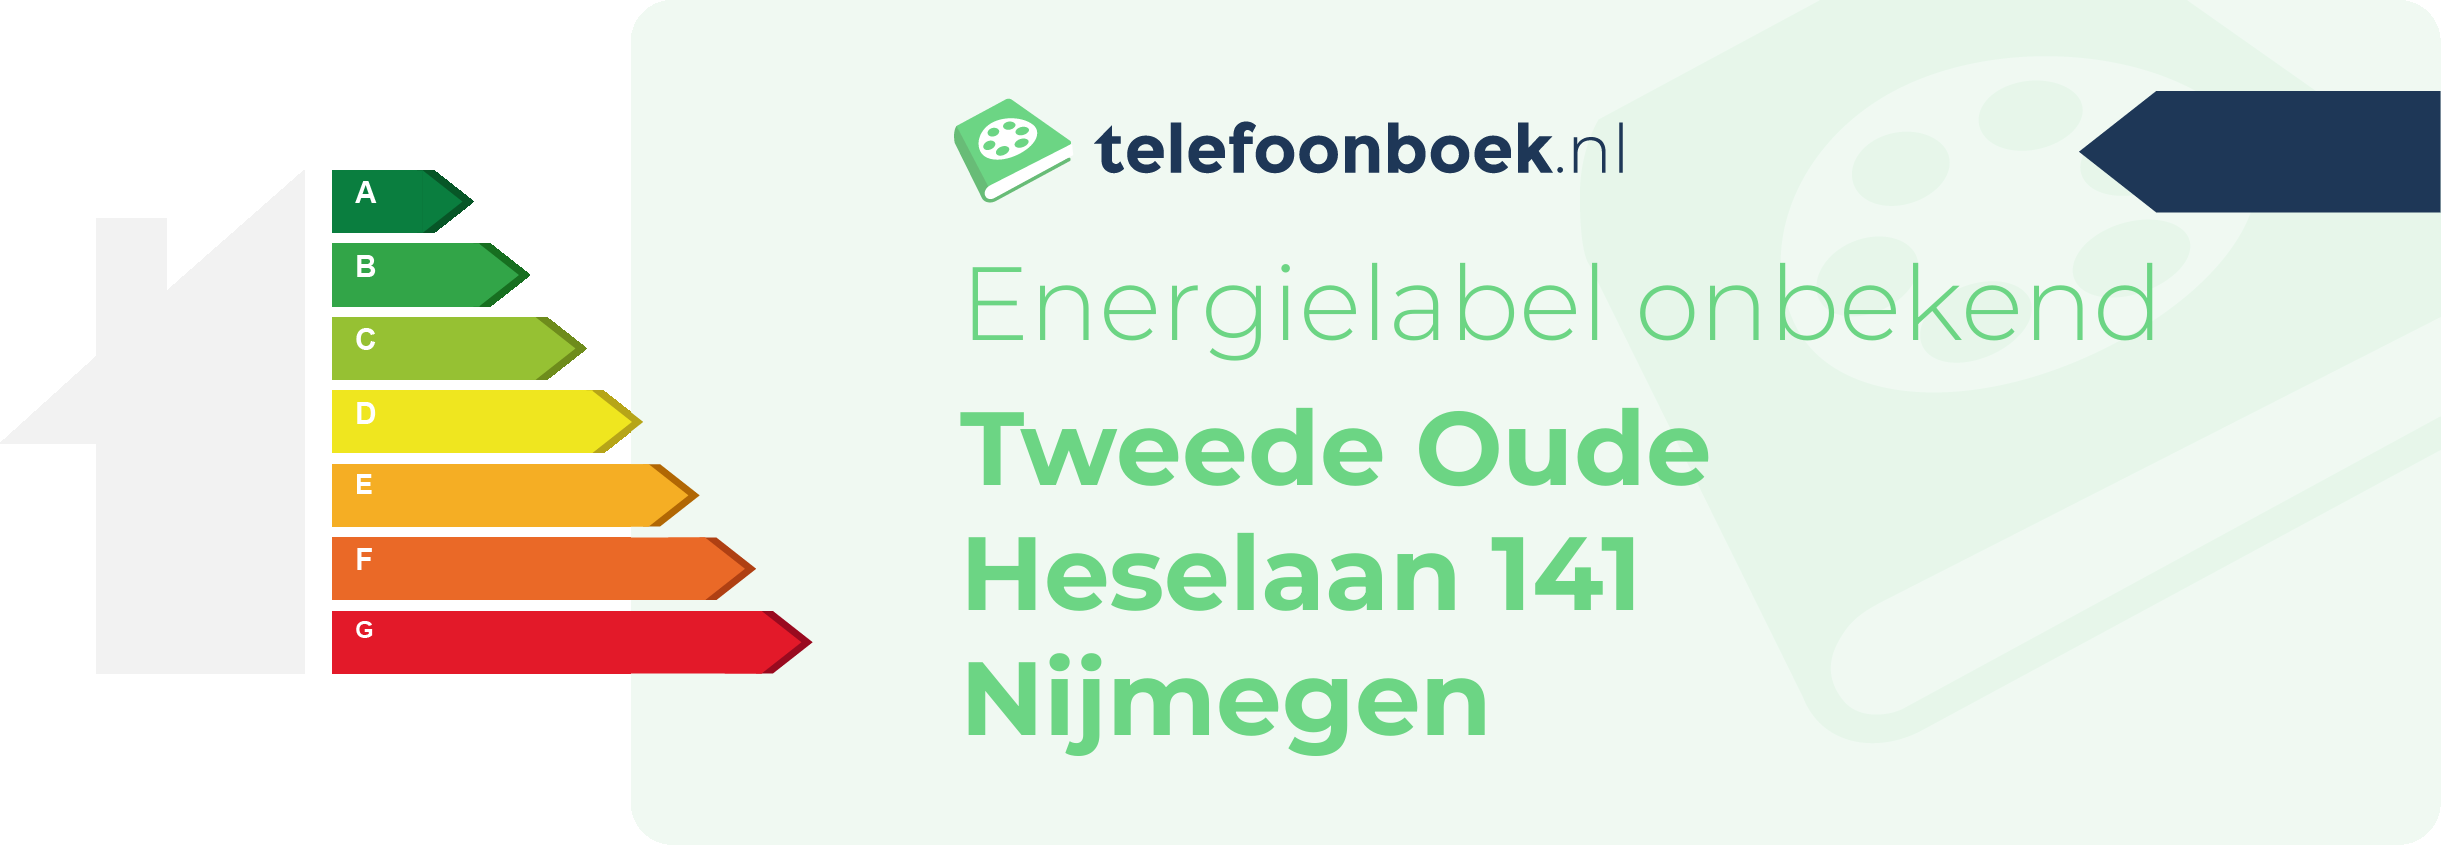 Energielabel Tweede Oude Heselaan 141 Nijmegen